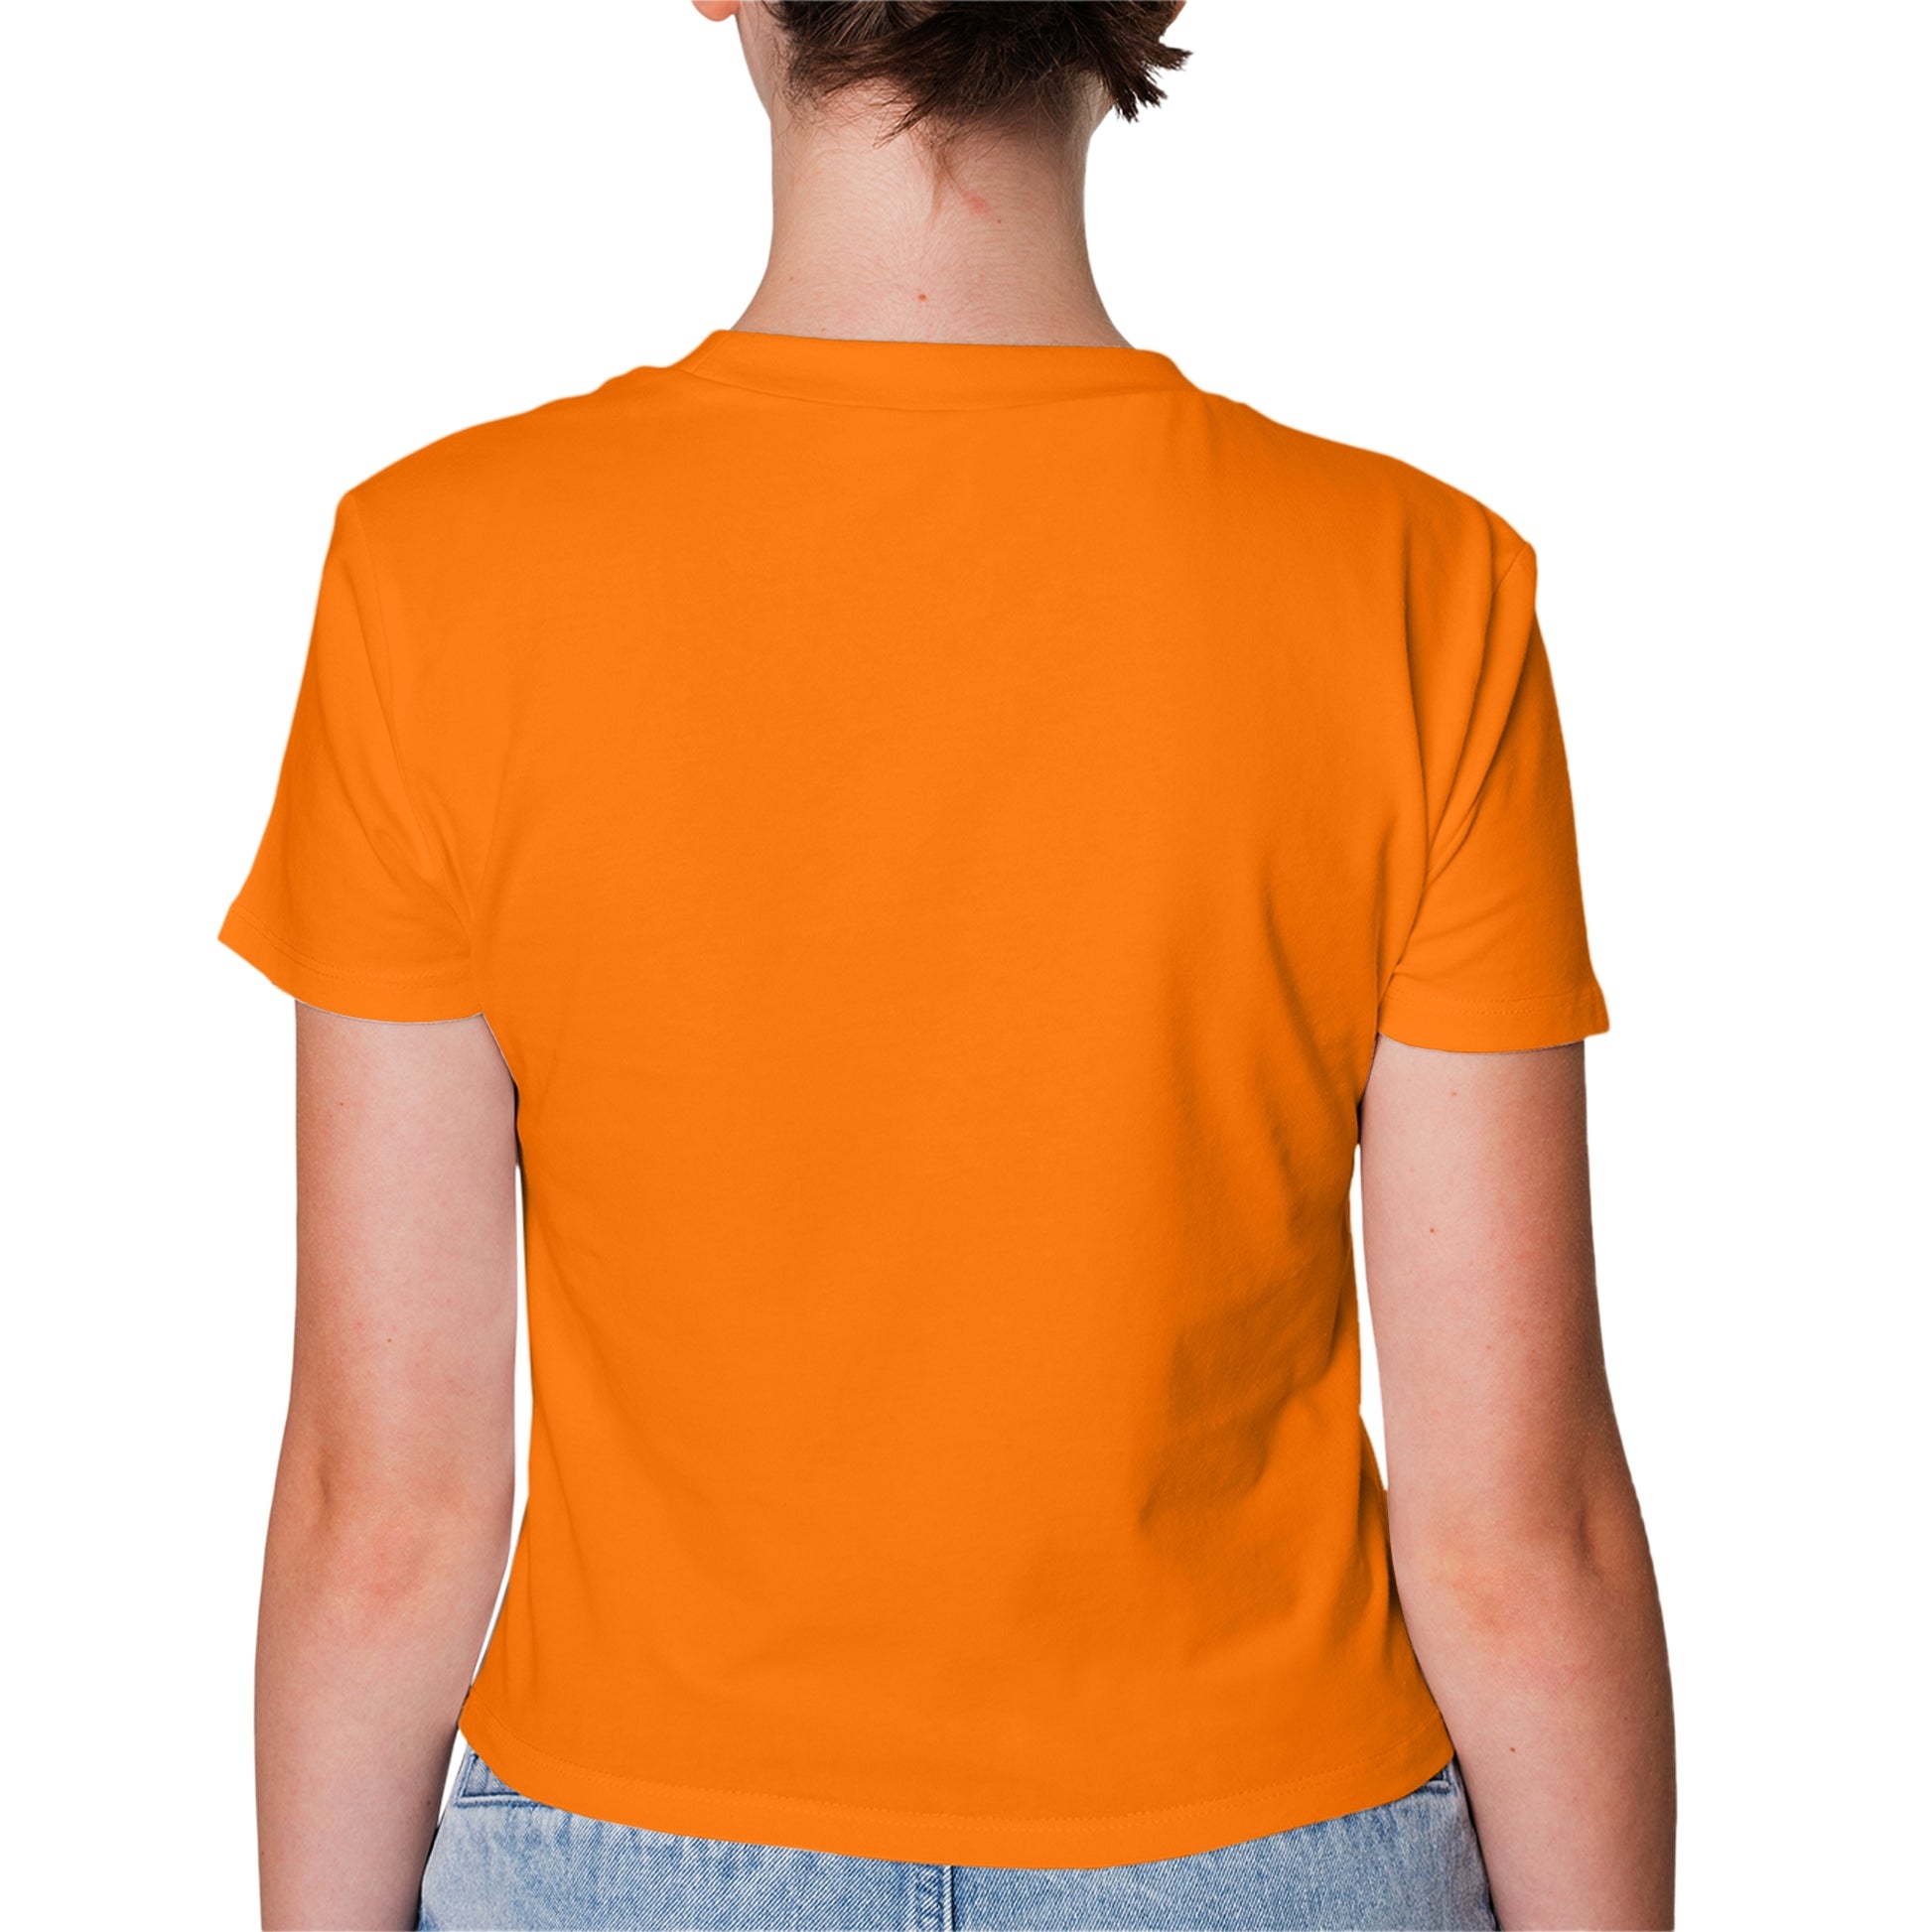 Orange T-Shirt For Women - FlyingCart.pk